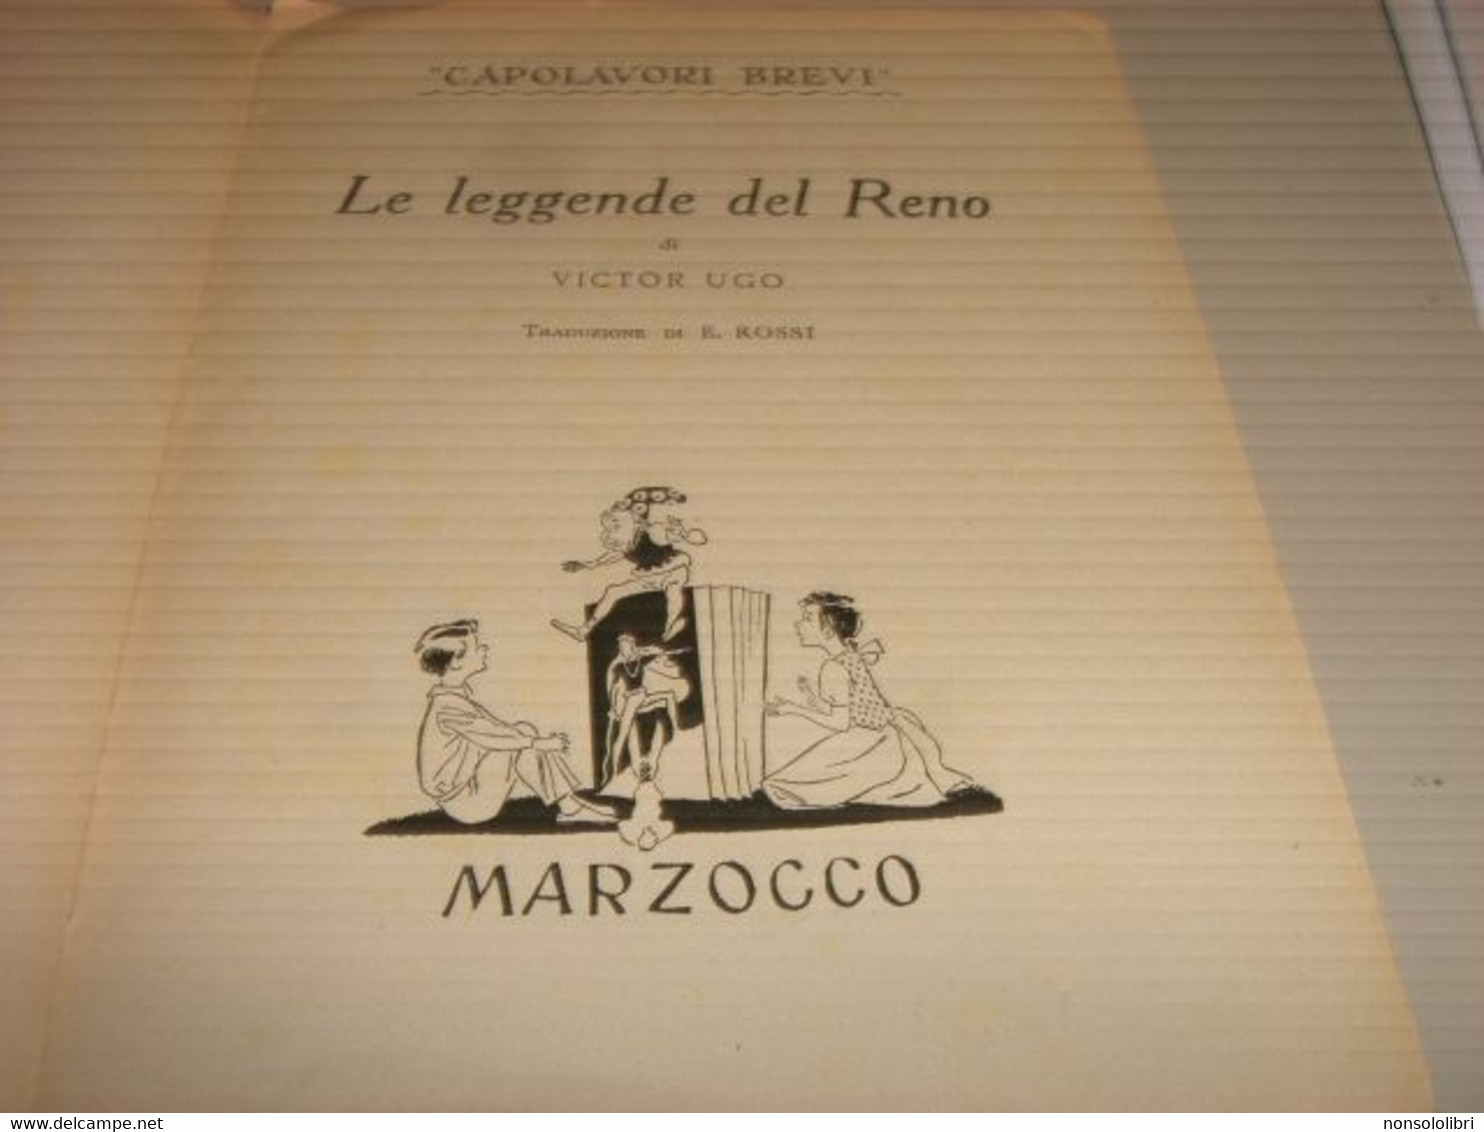 LIBRO CAPOLAVORI BREVI LE LEGGENDE DEL RENO -VICTOR HUGO -BEMPORAD MARZOCCO 1950 - Bambini E Ragazzi